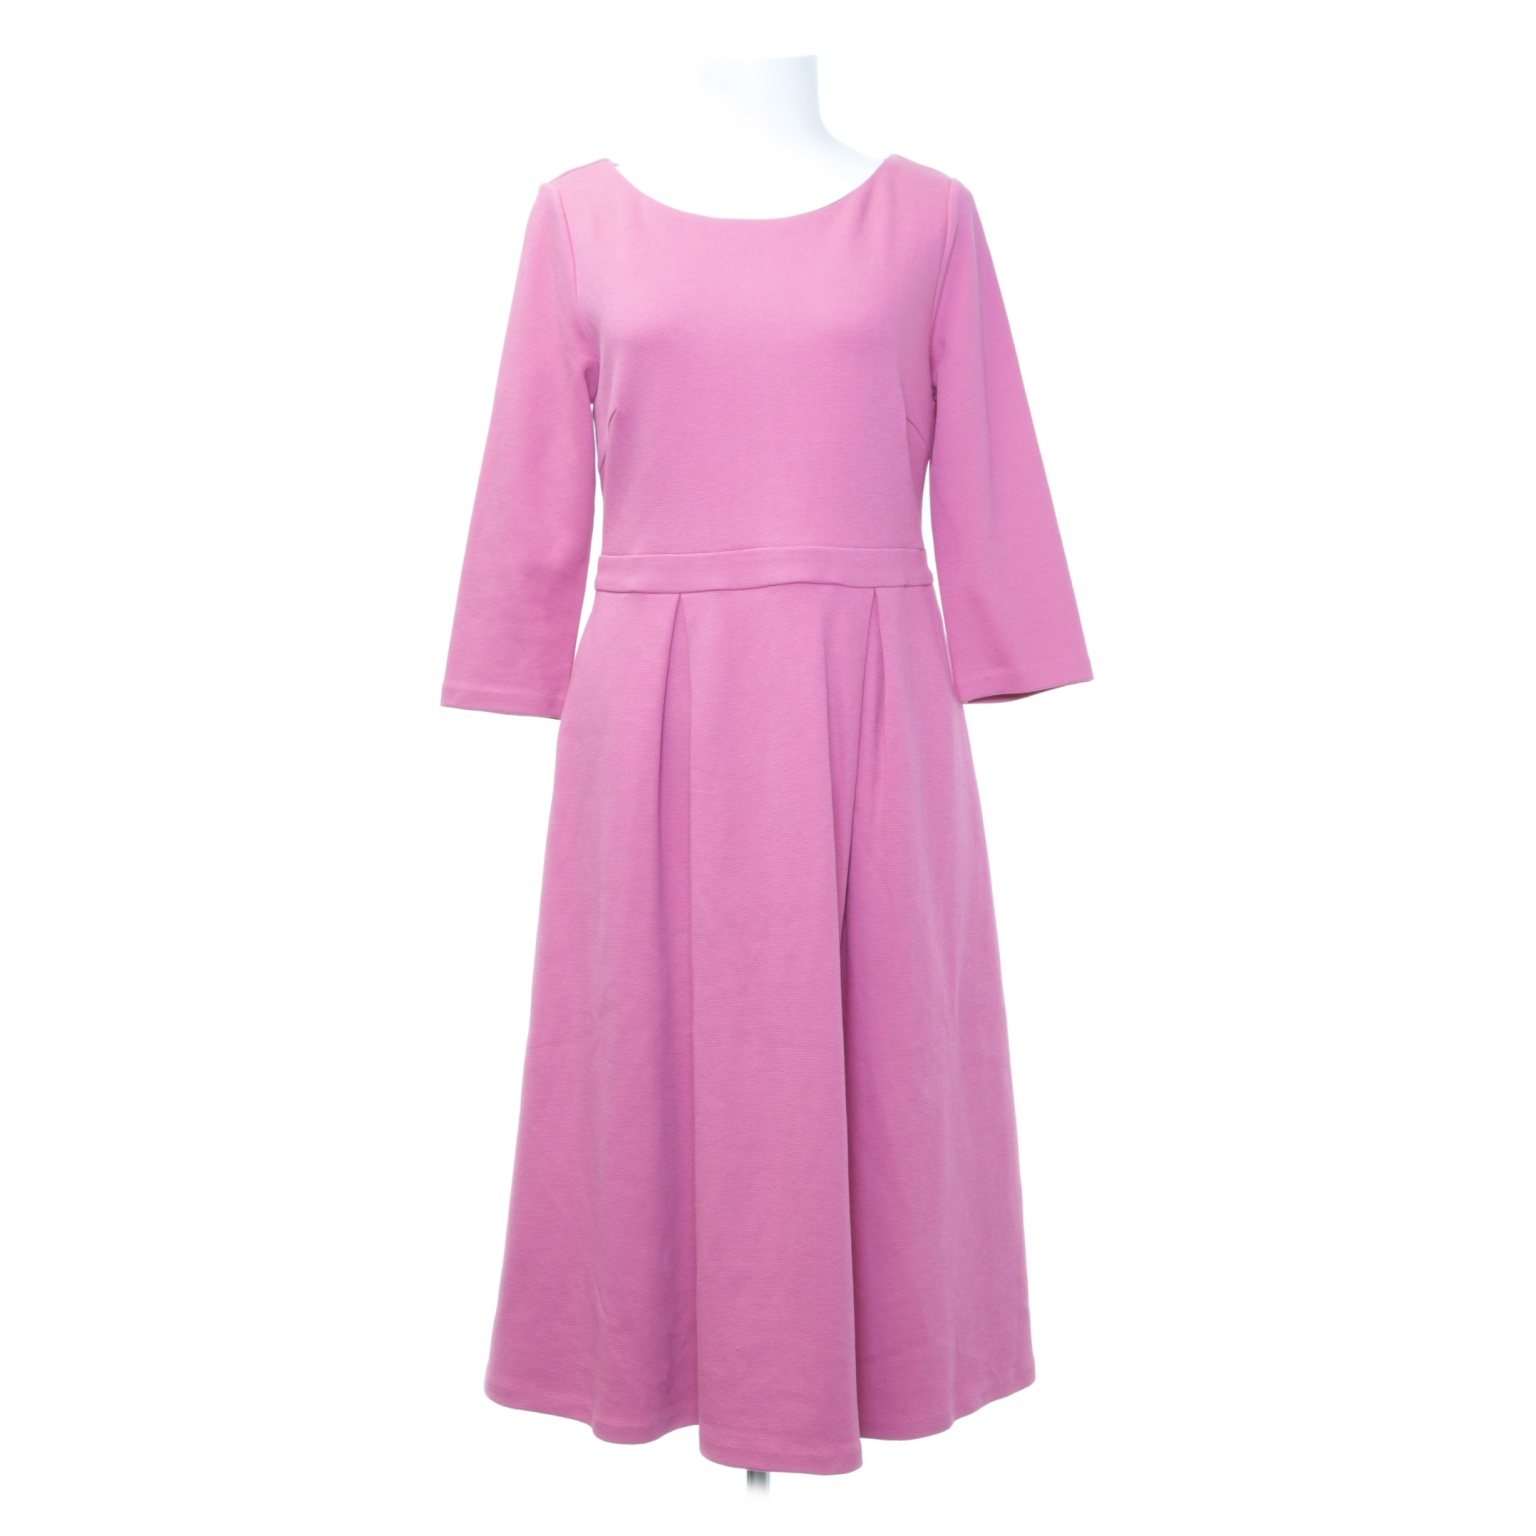 Boden - Kleid - Größe: 40 - Pink von Boden